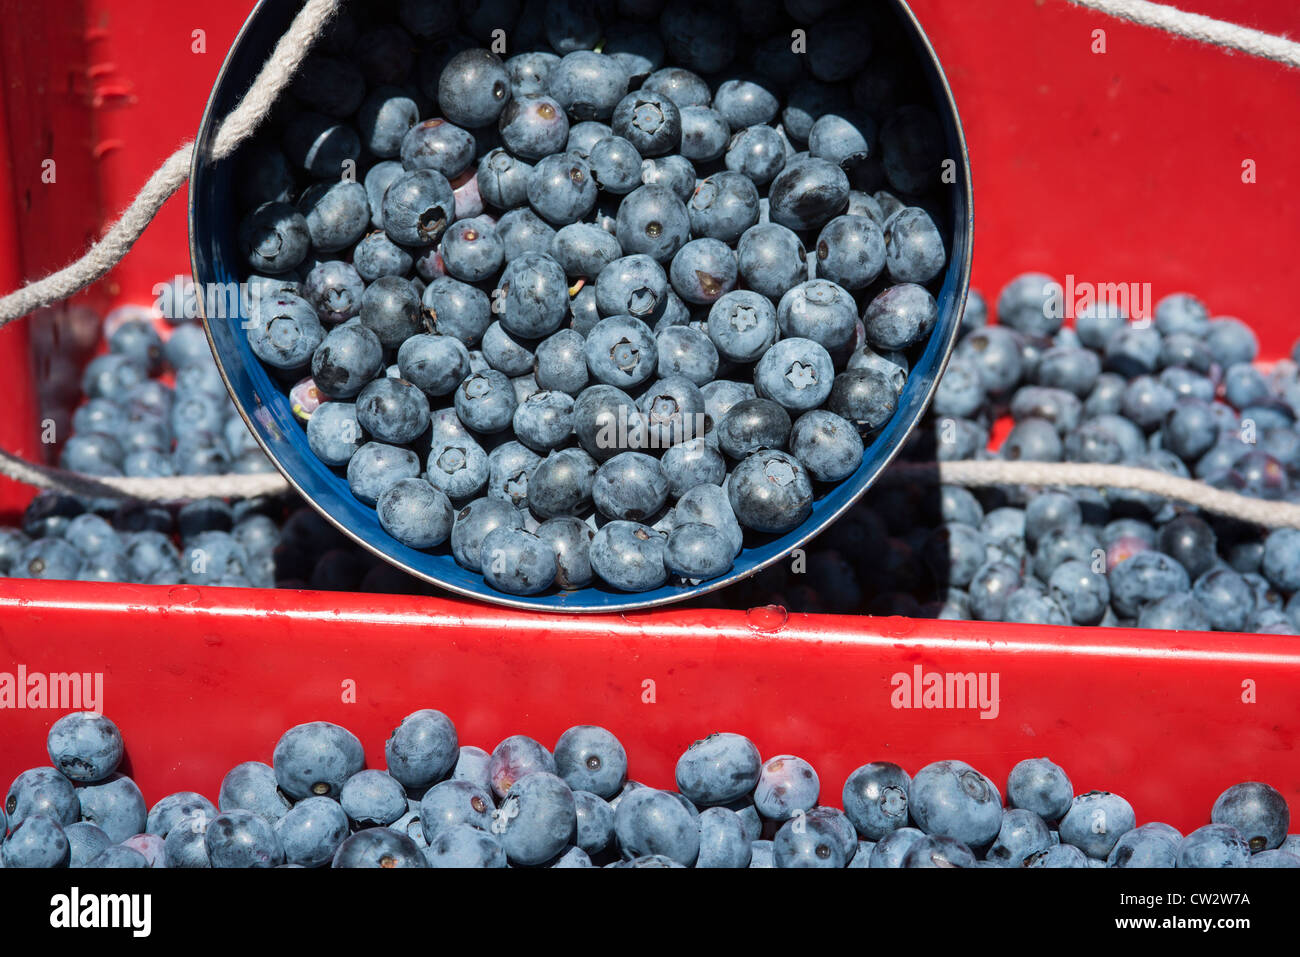 Blueberry harvest, New Jersey, USA Stock Photo